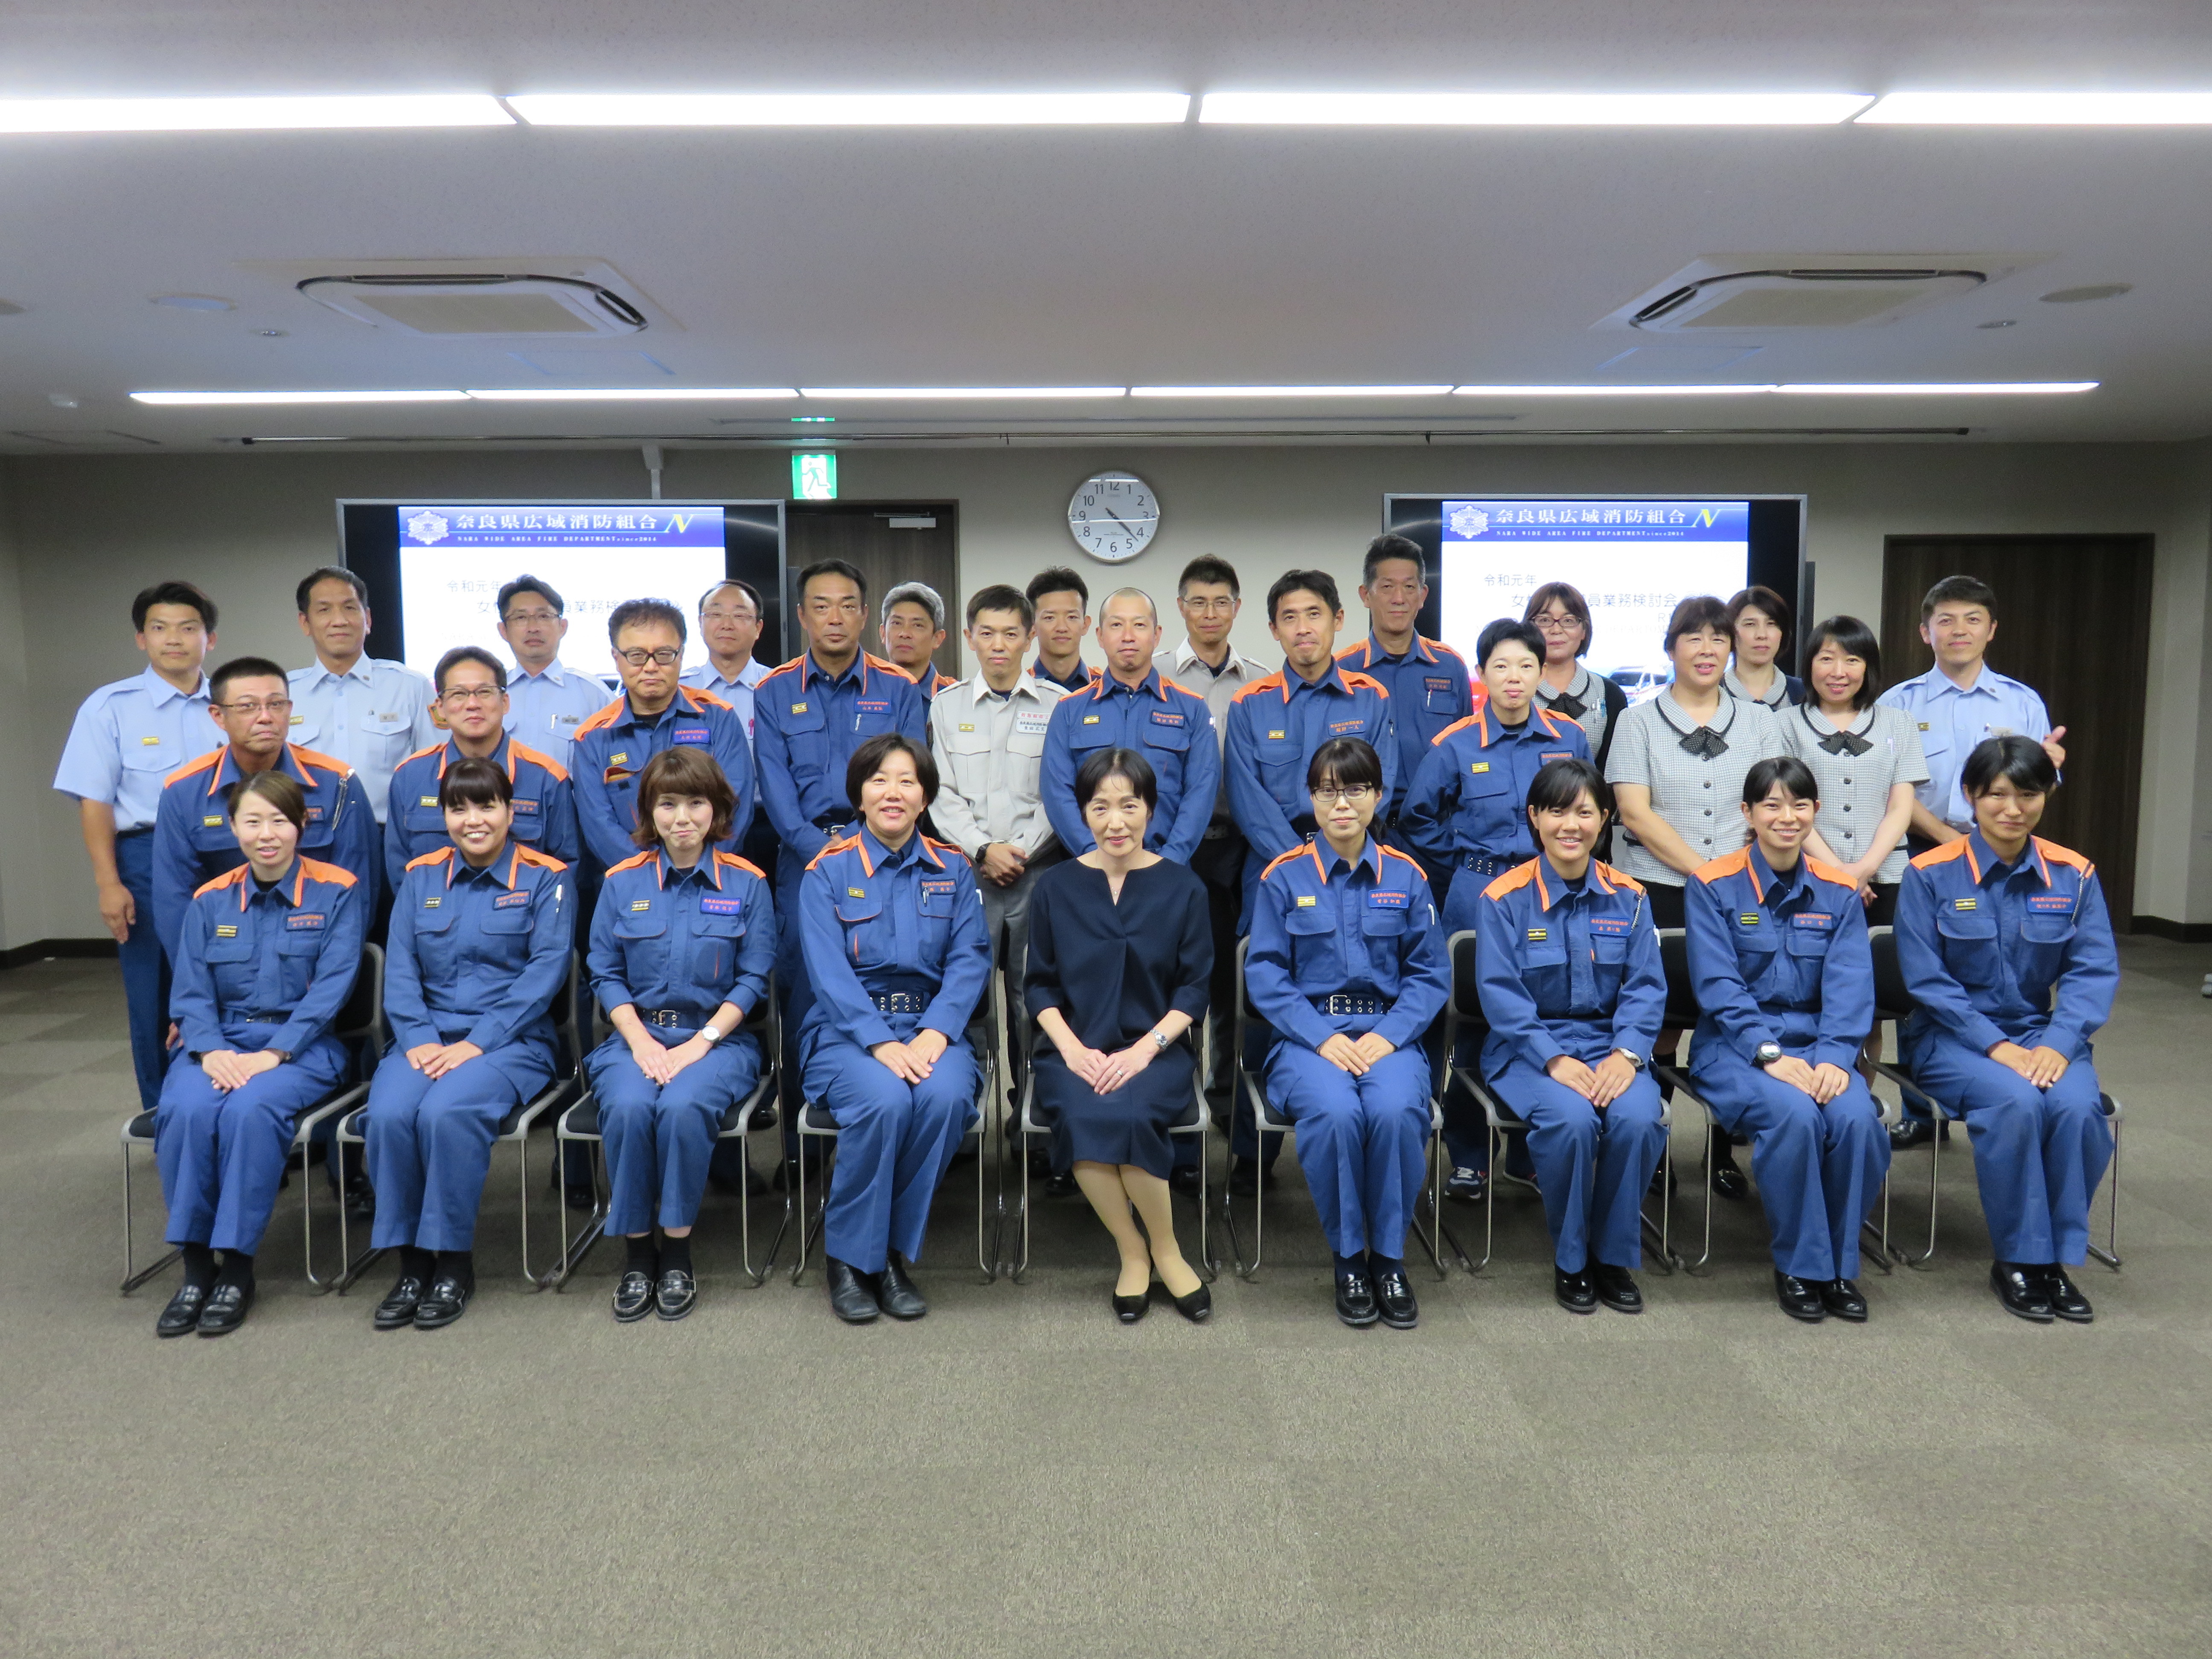 奈良県広域消防組合における女性消防職員の活躍推進および特定事業主行動計画に基づく最新値の公表について 奈良県広域消防組合